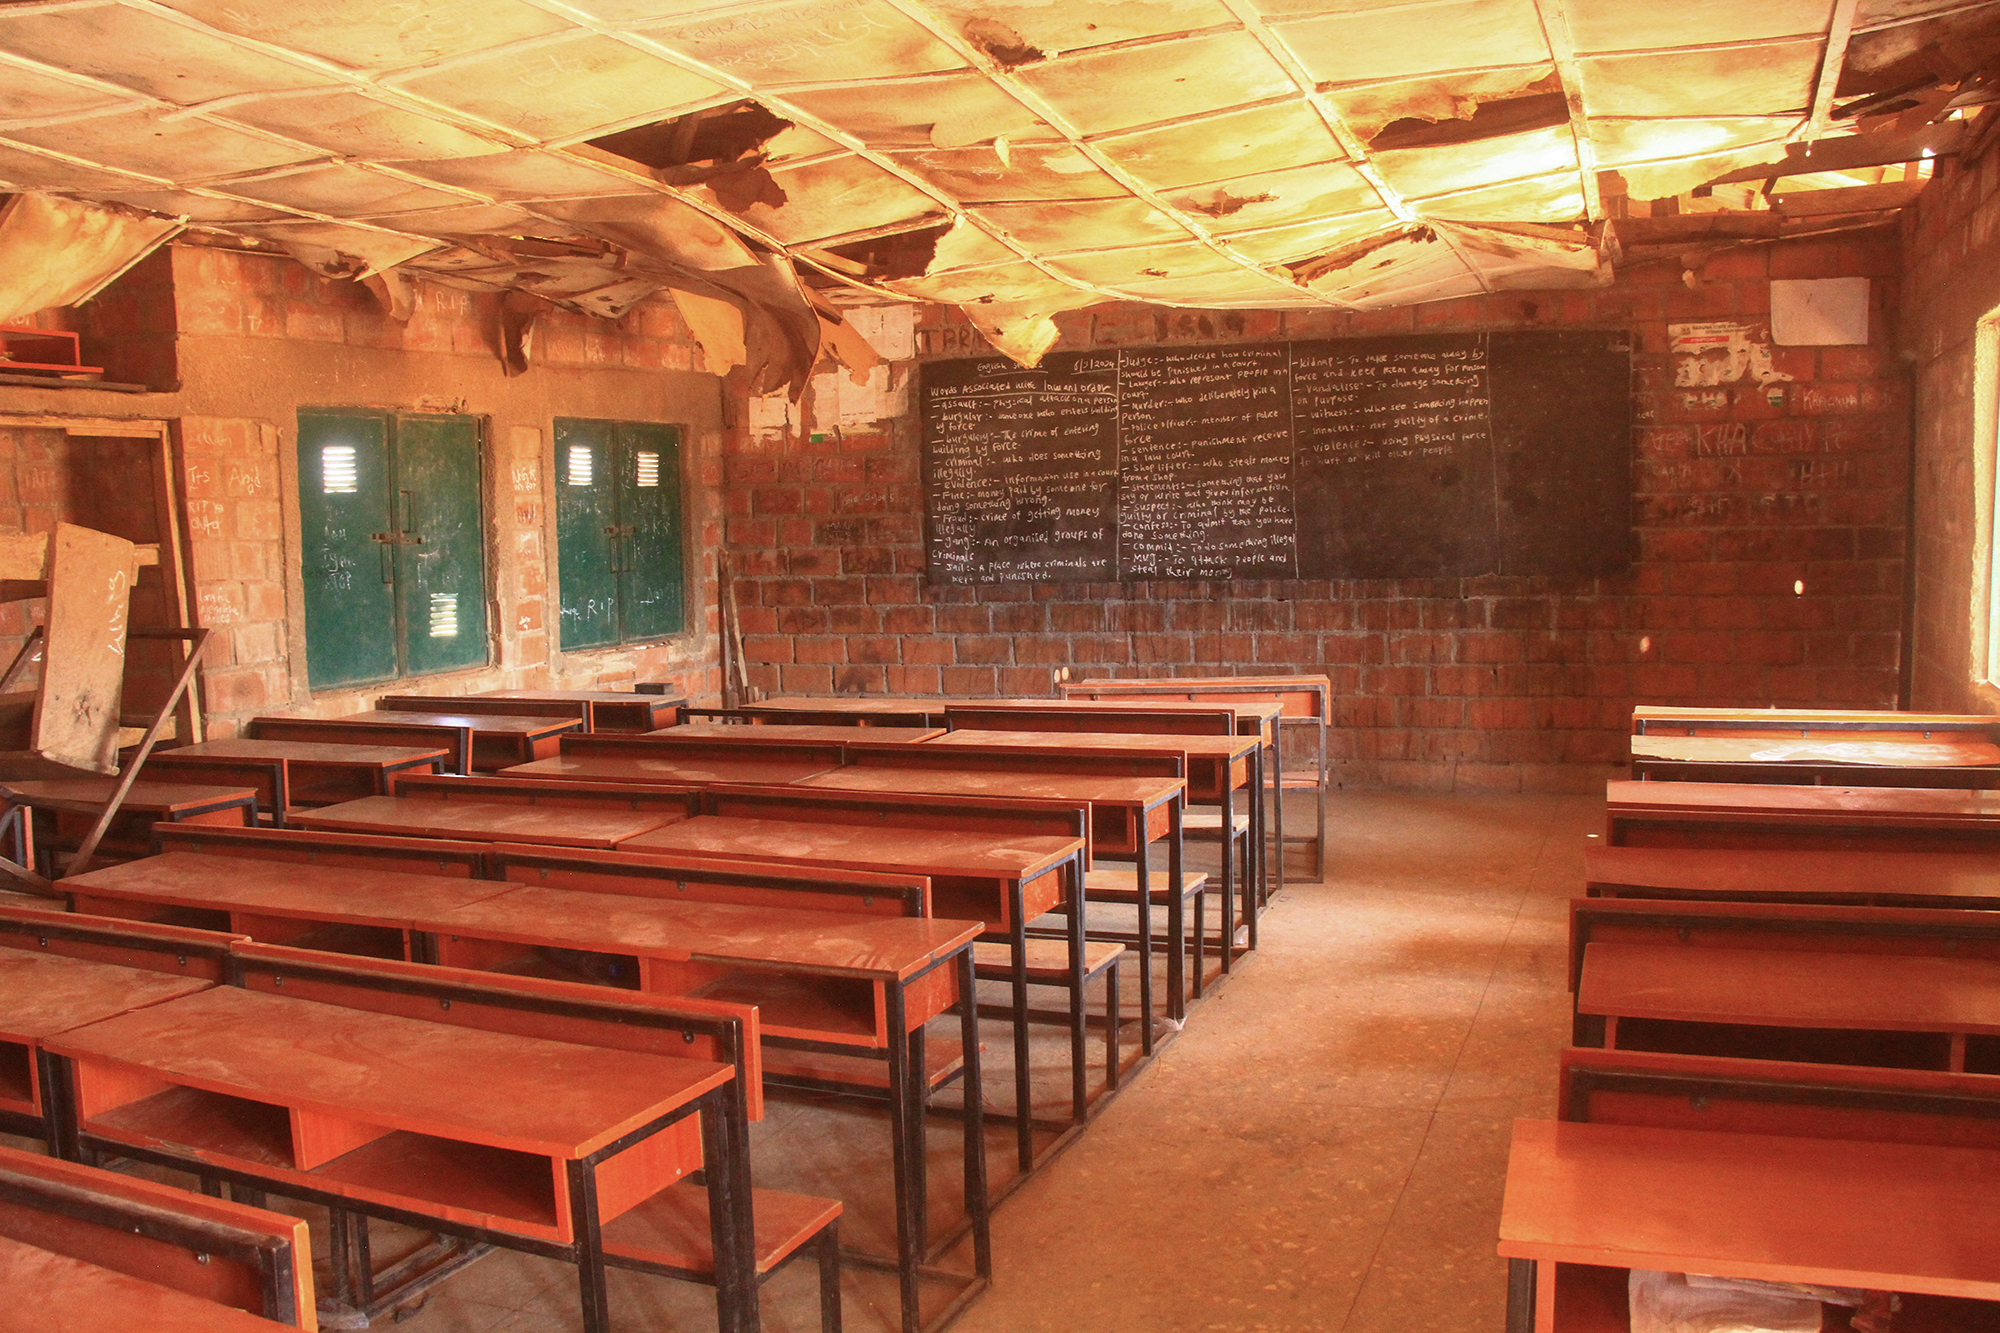 Klassenzimmer einer nigerianischen Schule, aus der Kinder von Terroristen verschleppt wurden